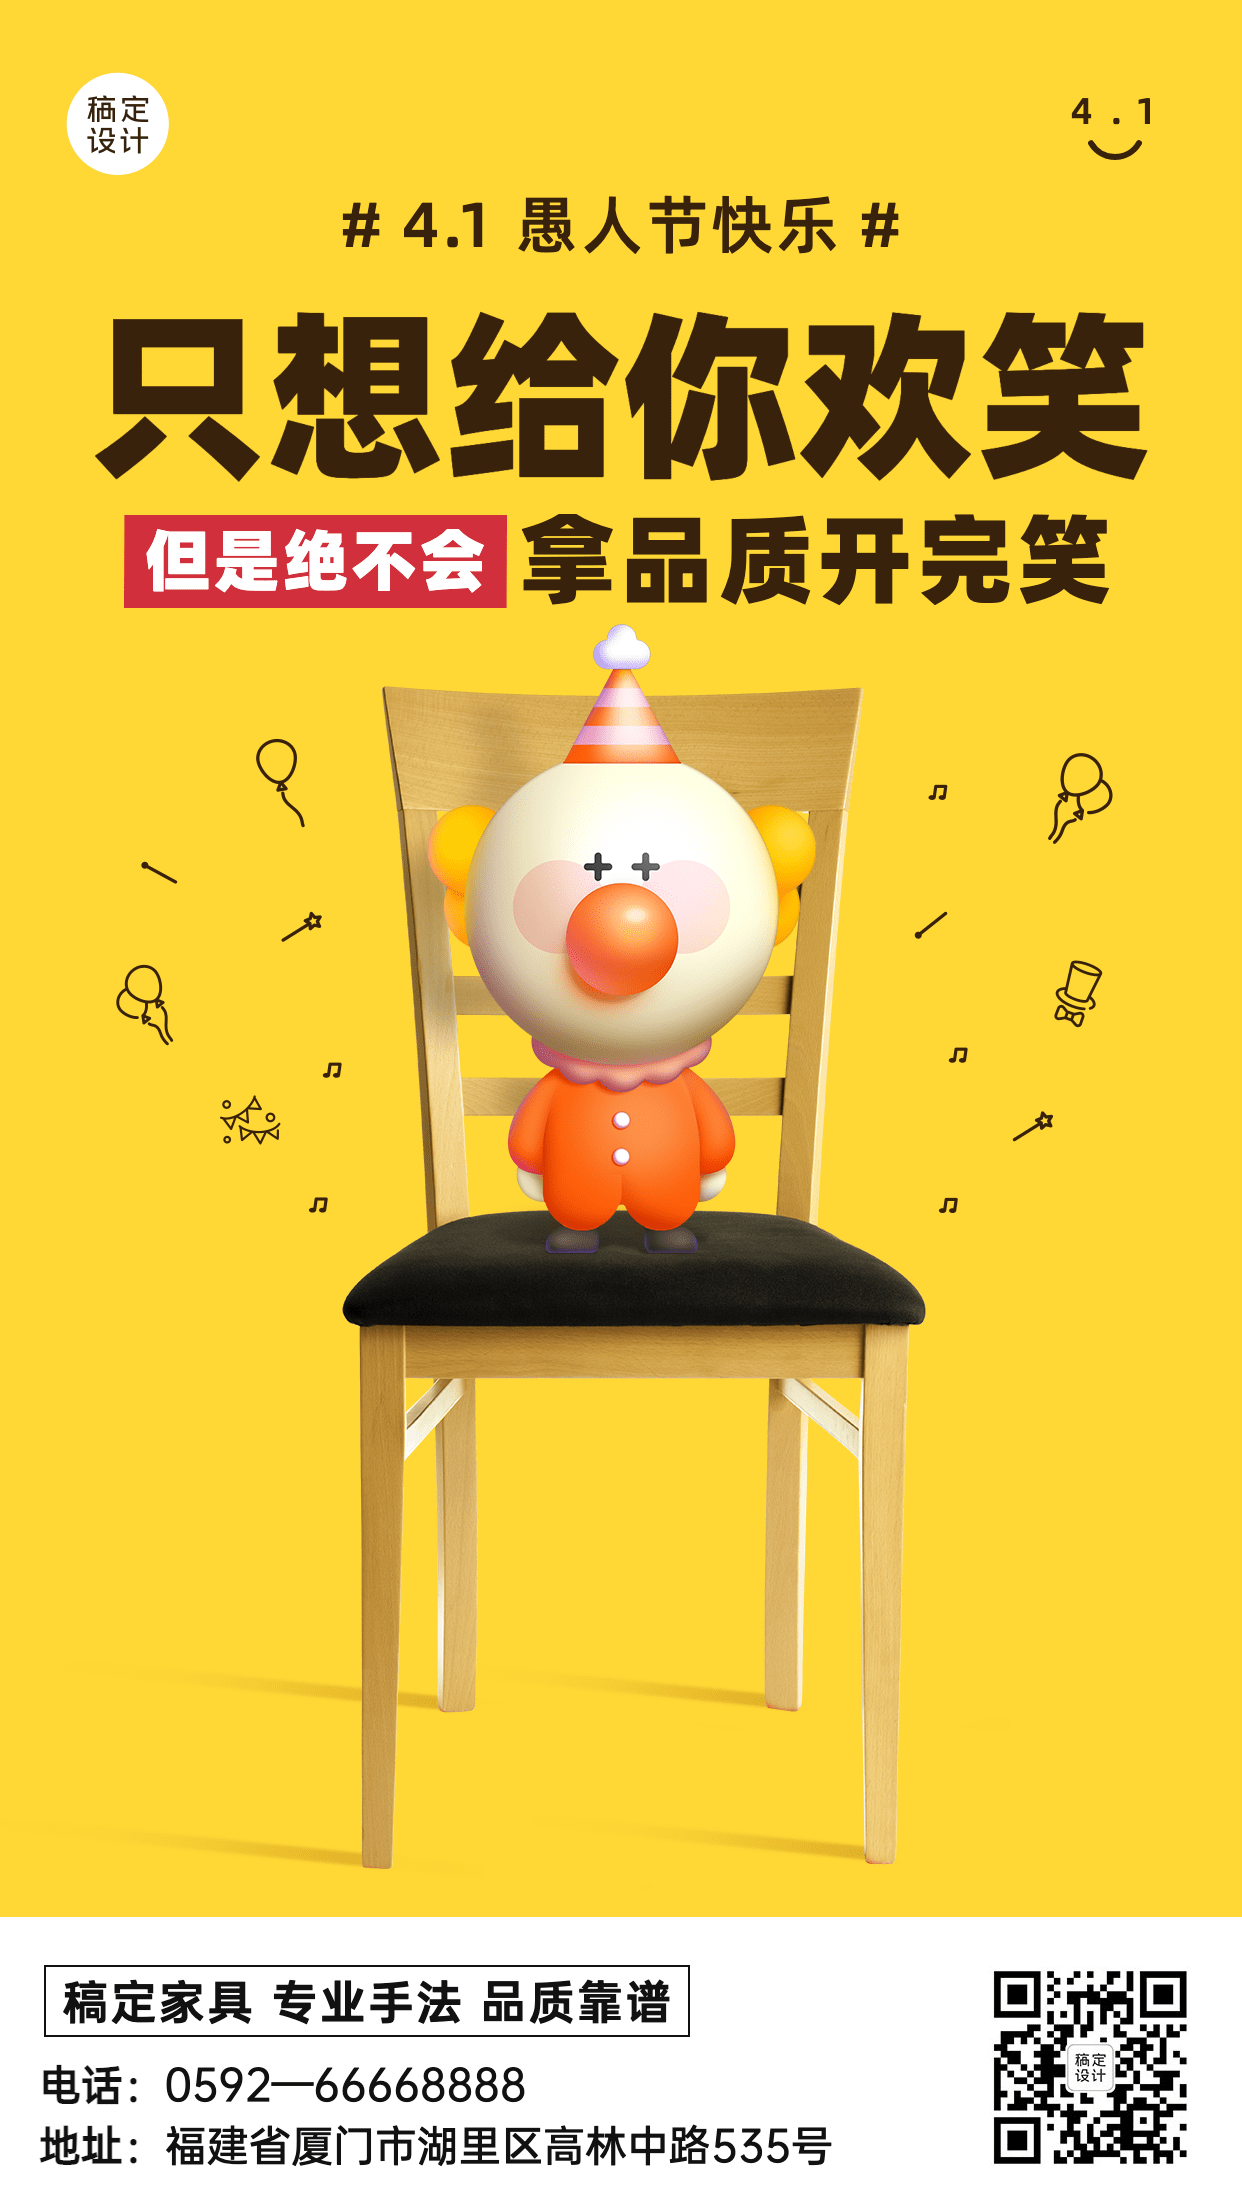 4.1愚人节节日活动产品促销手机海报预览效果